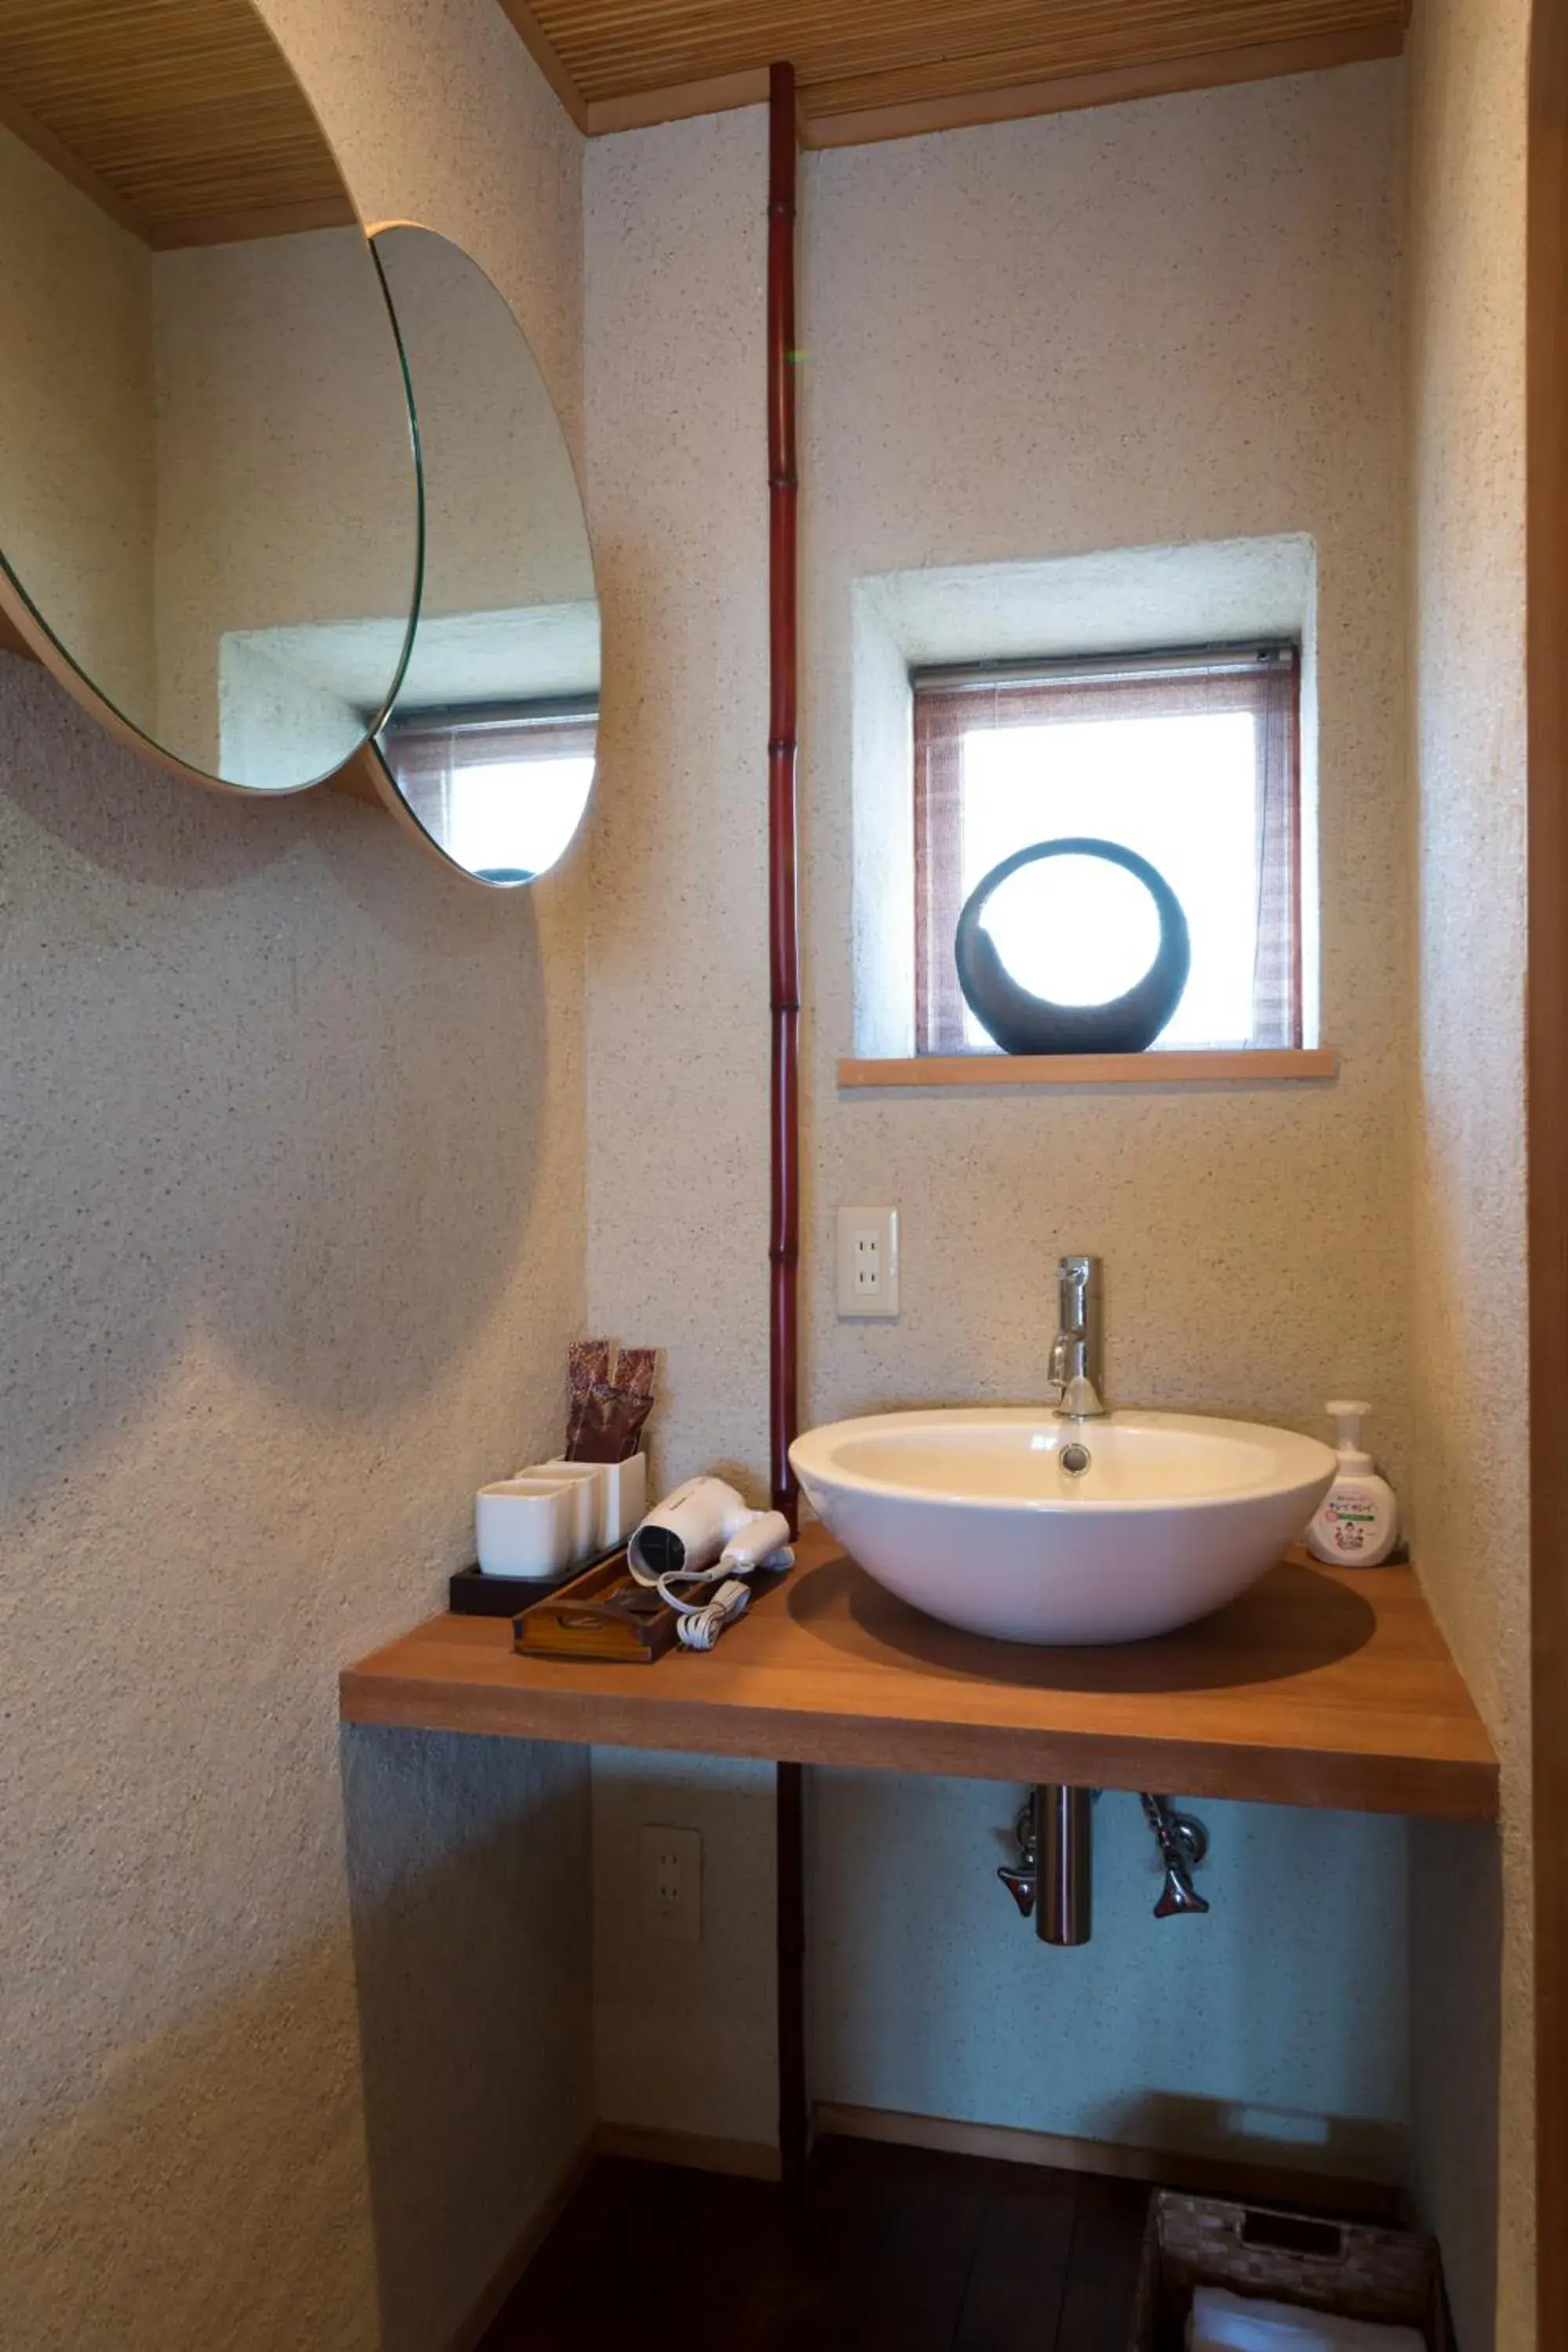 Area and facilities, Bathroom in Kyotoya Sakuraan